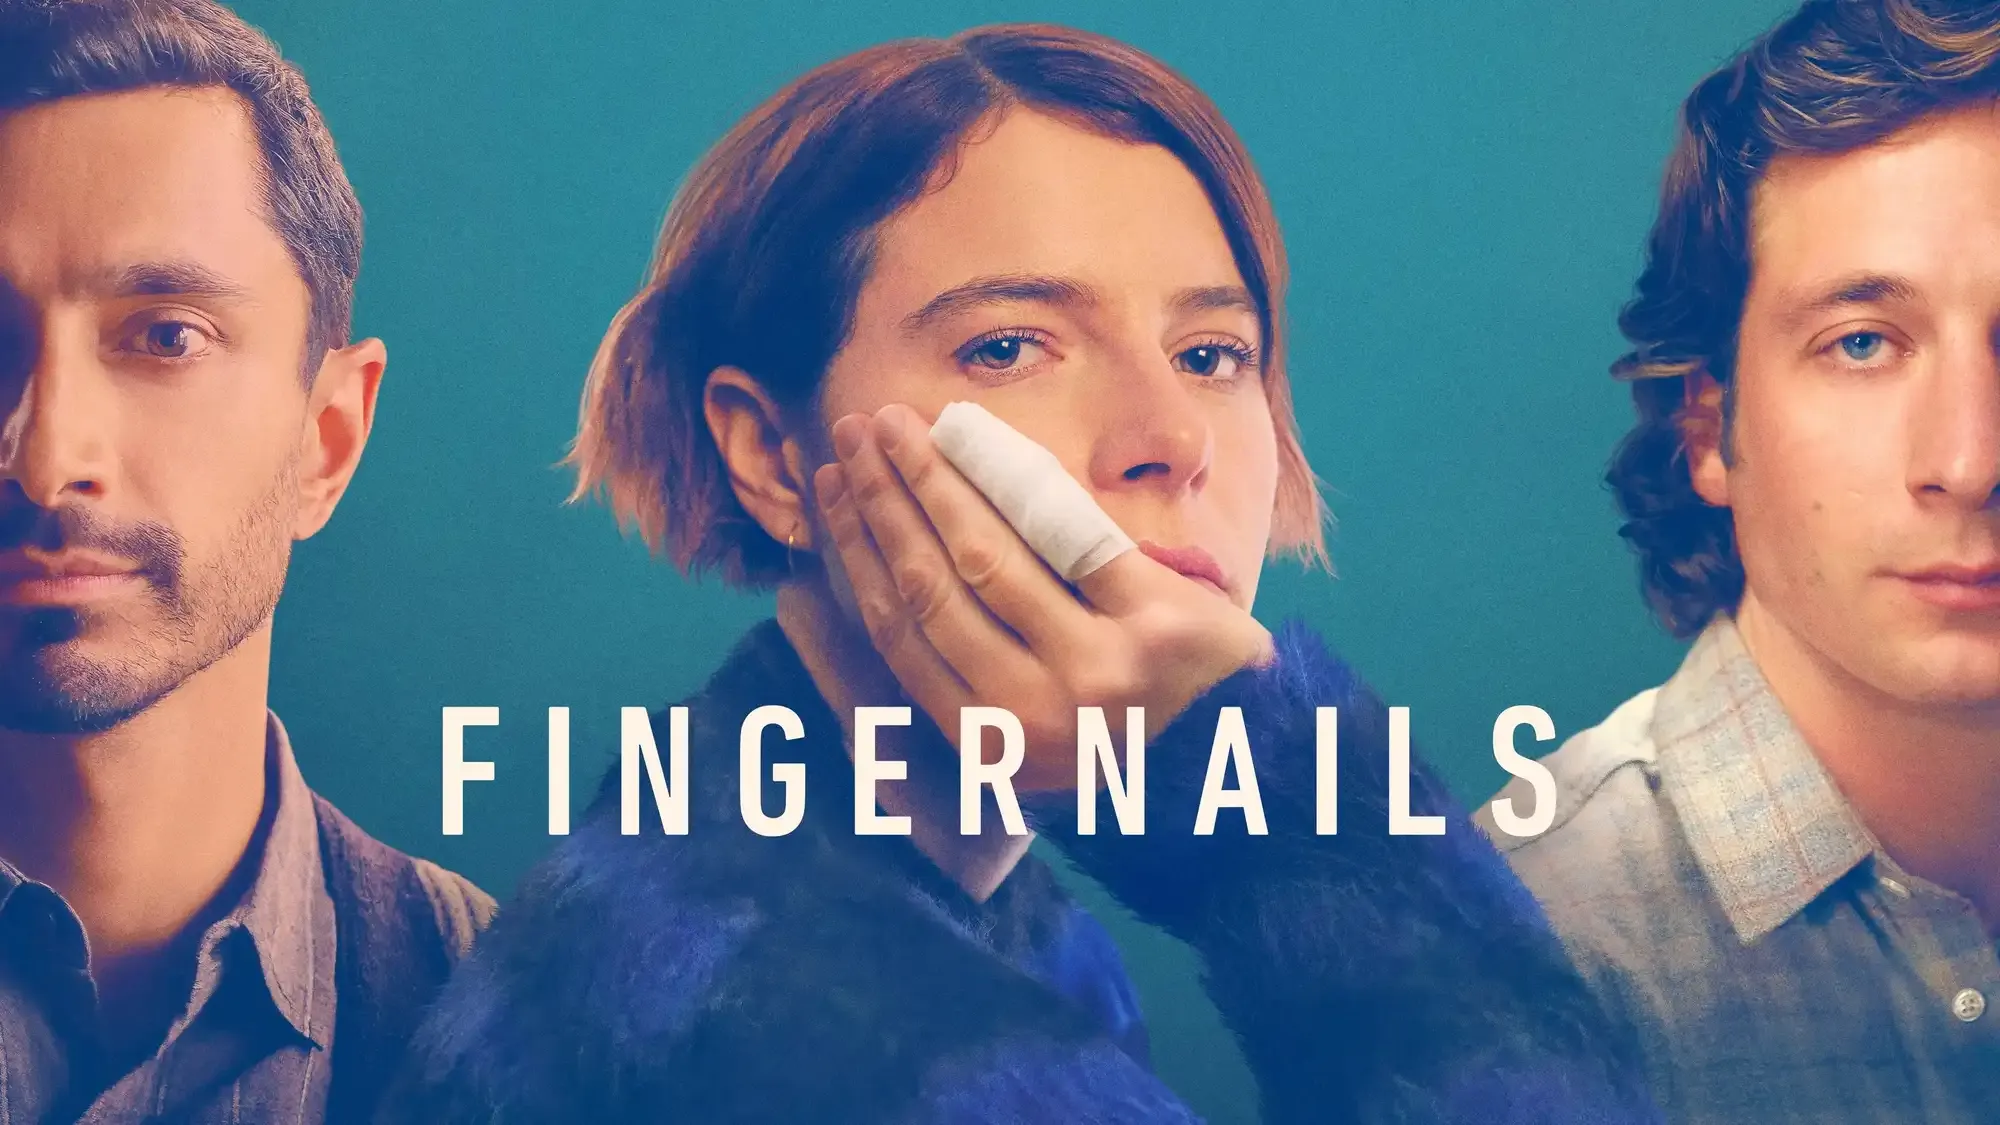 Fingernails movie review